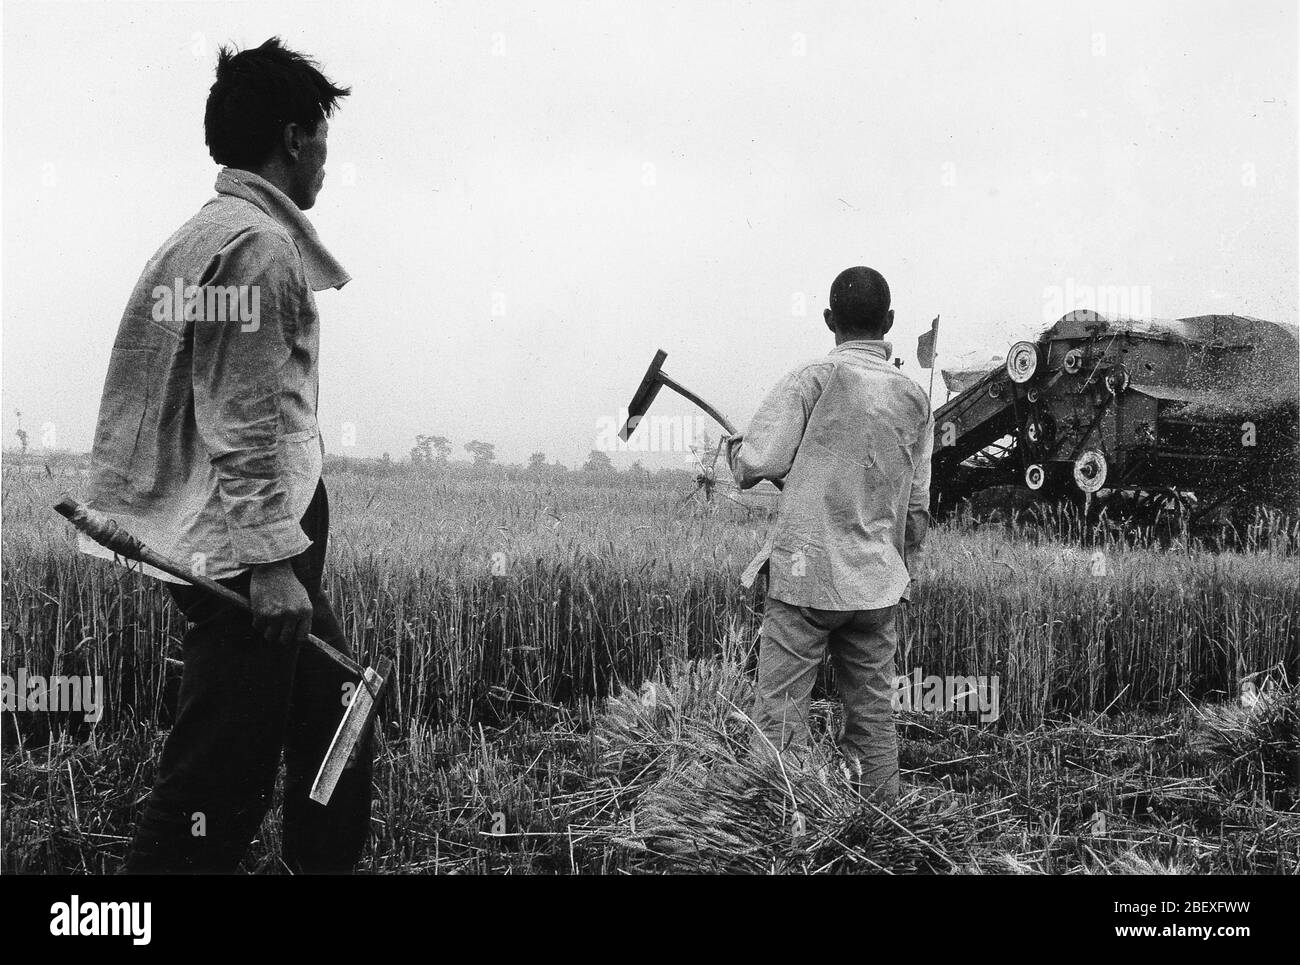 Nel 1997 campi di grano rurale a Guanzhong Shaanxi metodi tradizionali di raccolta del grano e operazioni meccanizzate coesistevano mai KE guardò l'arva Foto Stock